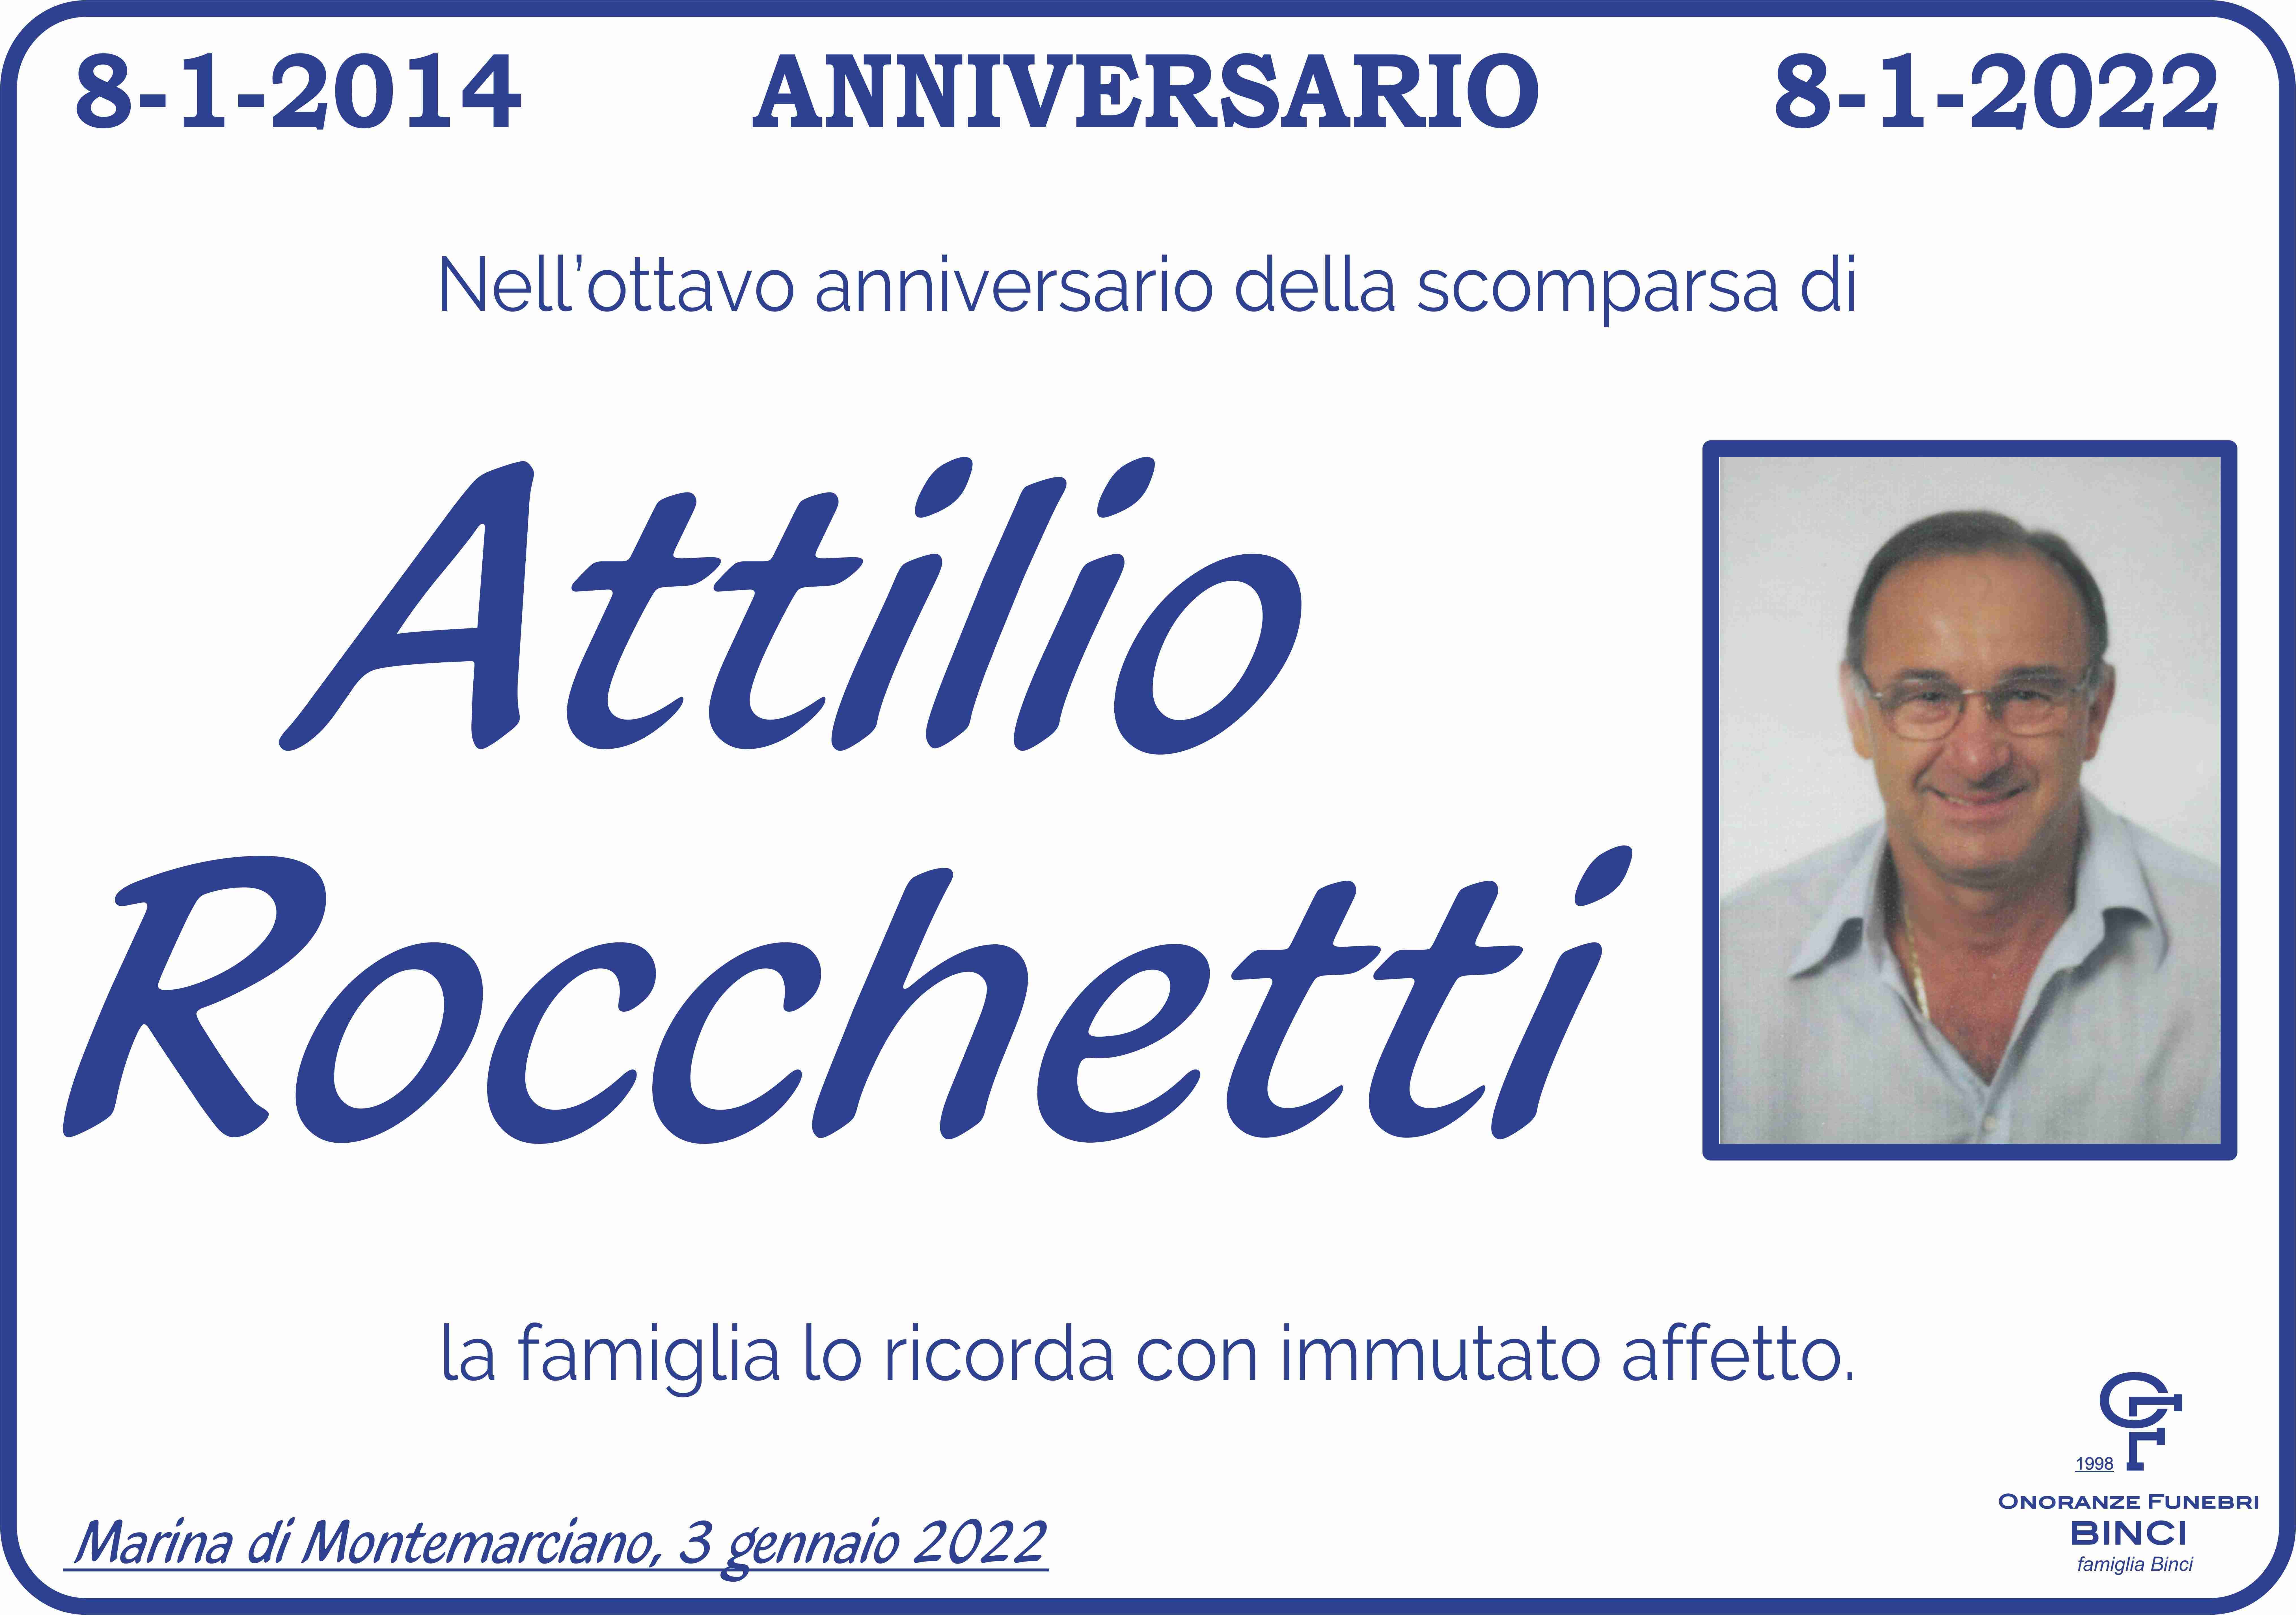 Attilio Rocchetti